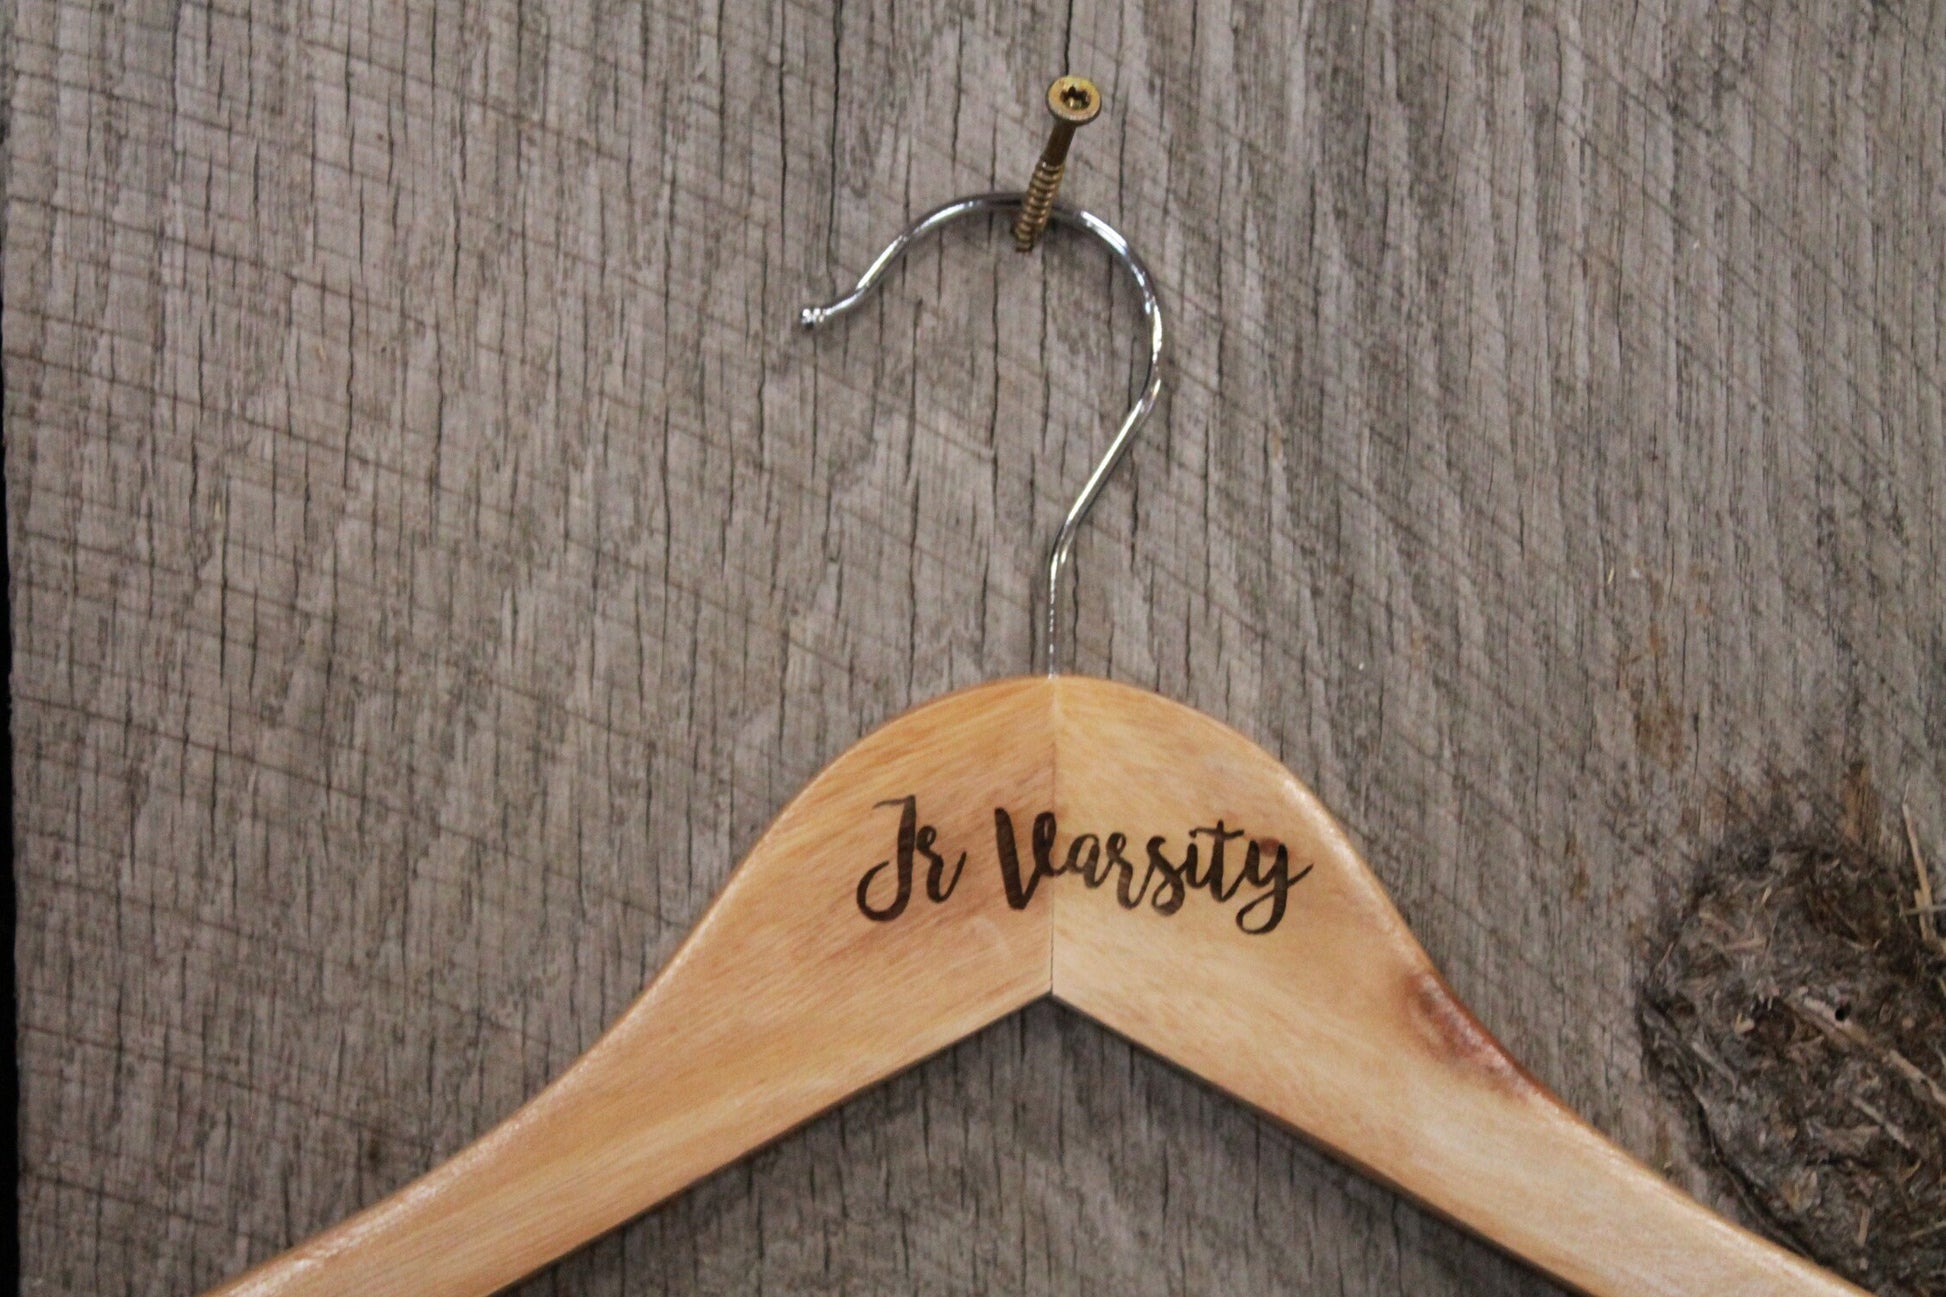 Jr Varsity Jacket Clothes Hanger Engraved Hard Wood Sturdy Ceremony Celebration Gift High School Letter